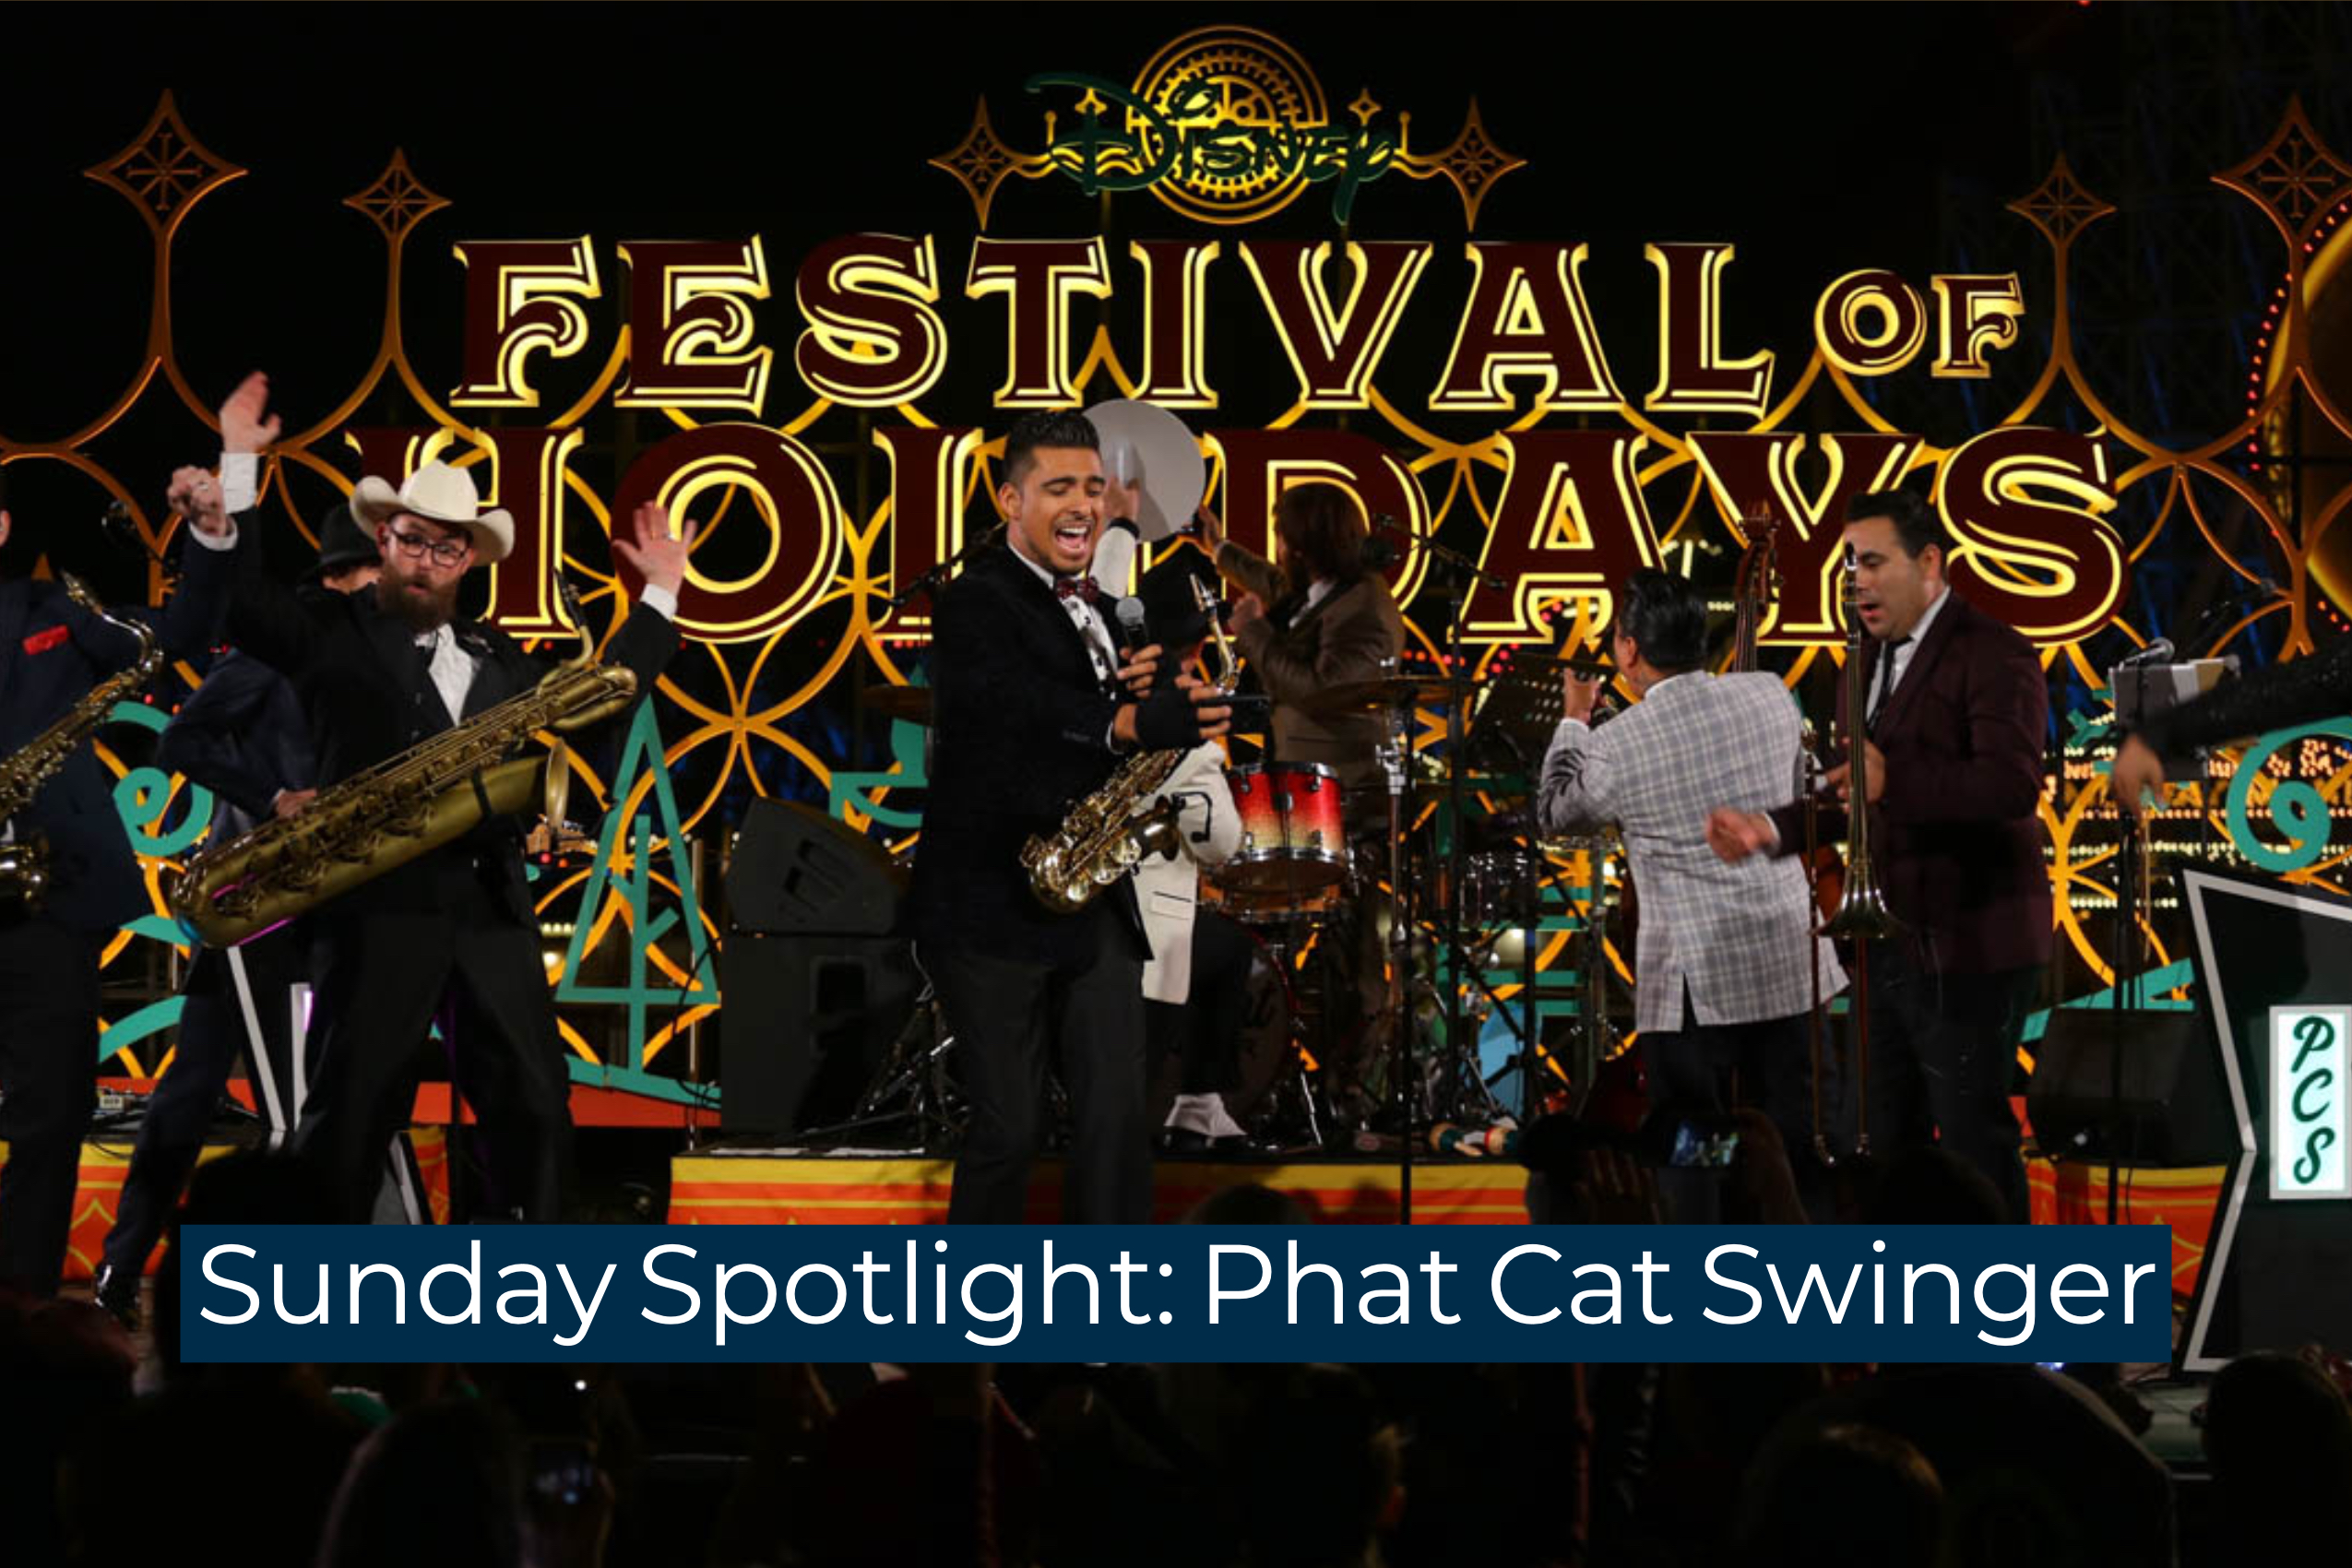 Sunday Spotlight: Phat Cat Swinger